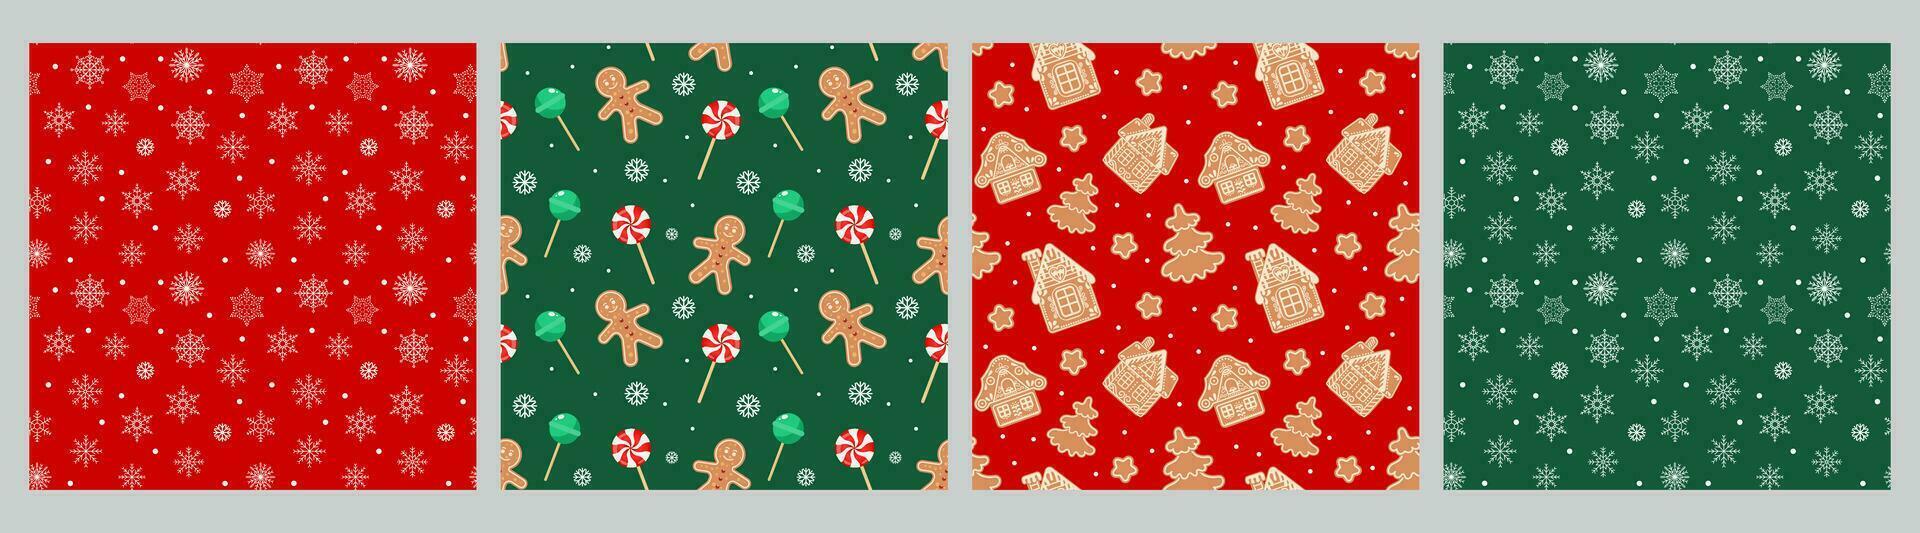 Sammlung von Weihnachten nahtlos Muster mit Lebkuchen Männer, Häuser, Schneeflocken, Weihnachten Süßigkeiten und Socken. einstellen von Urlaub Hintergründe, Vektor